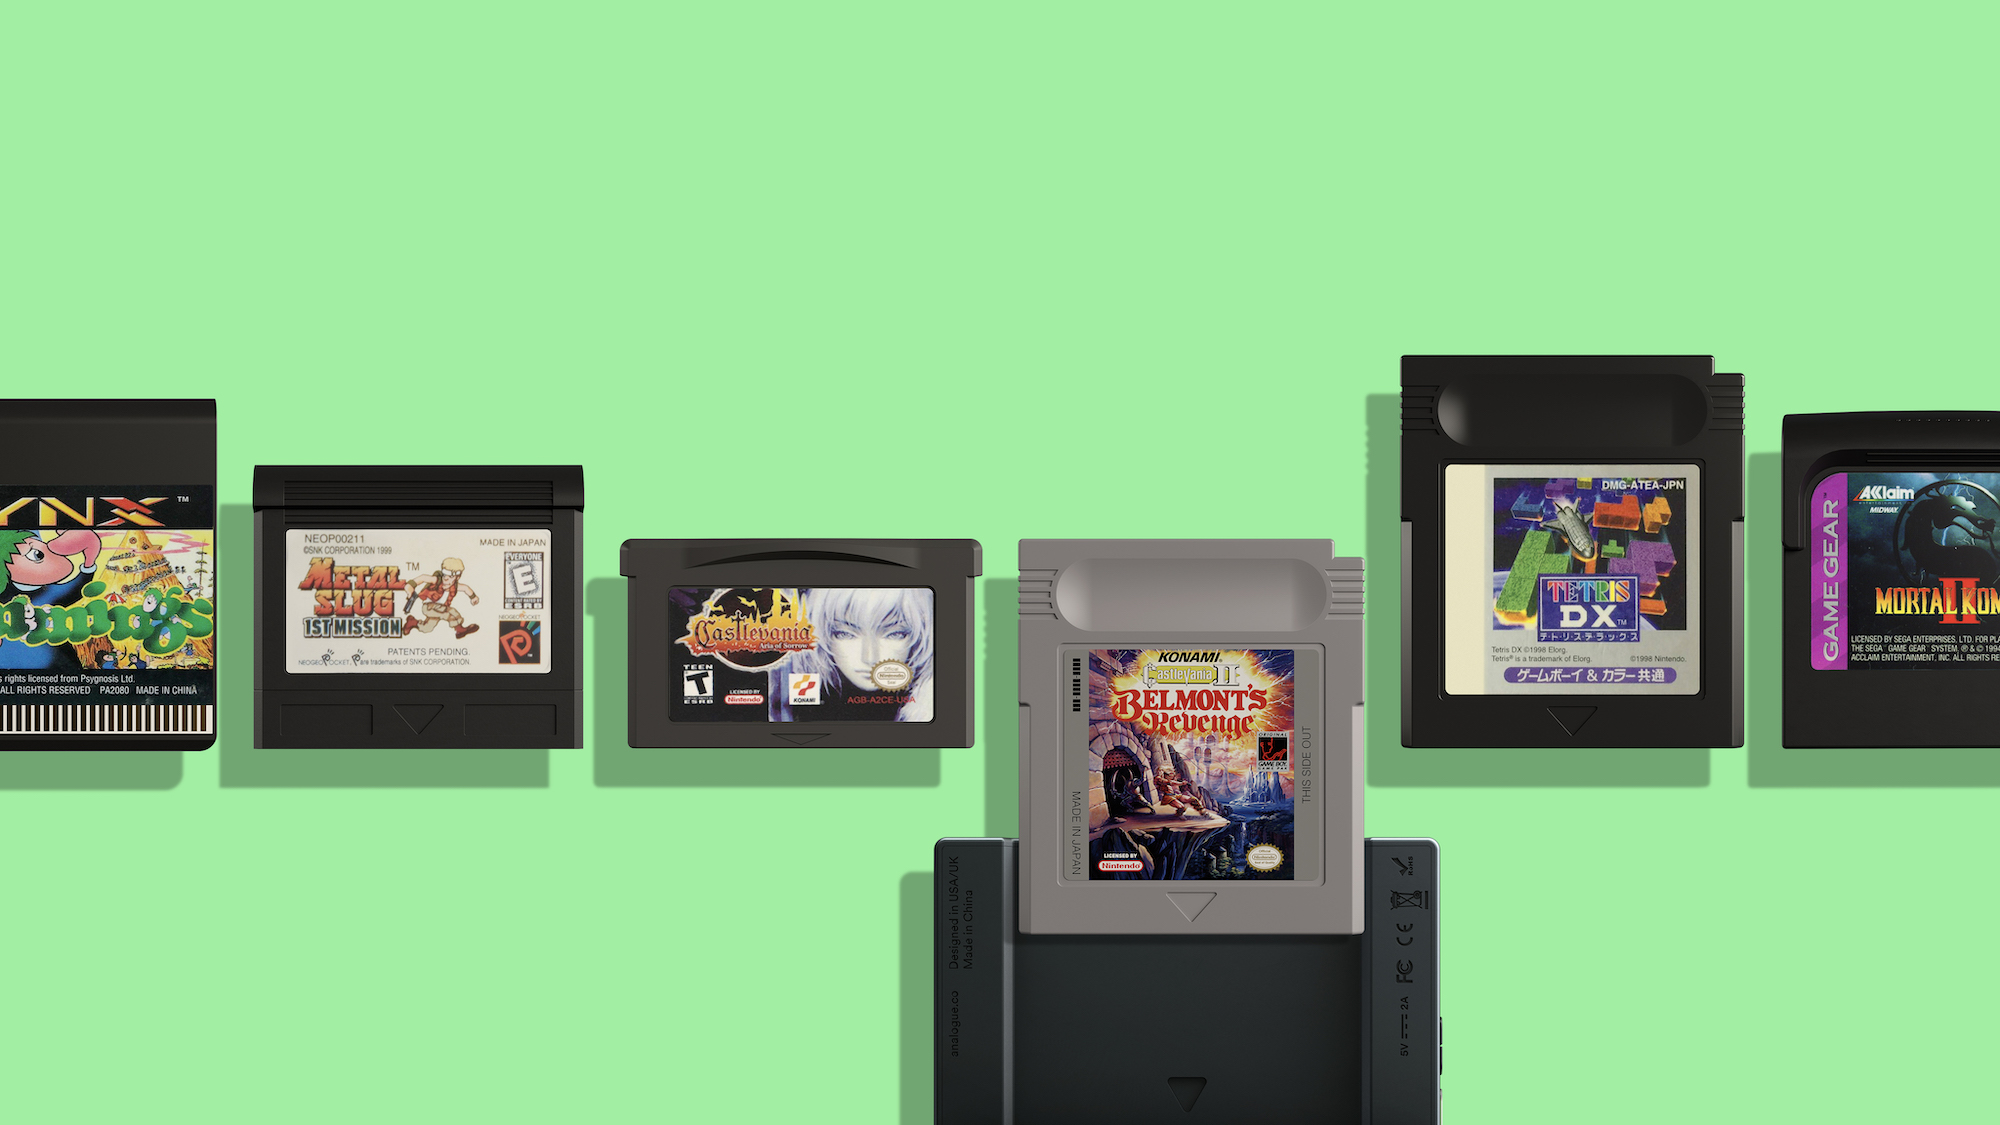 Analogue Pocket, la consola portátil que pretende revivir al Game Boy